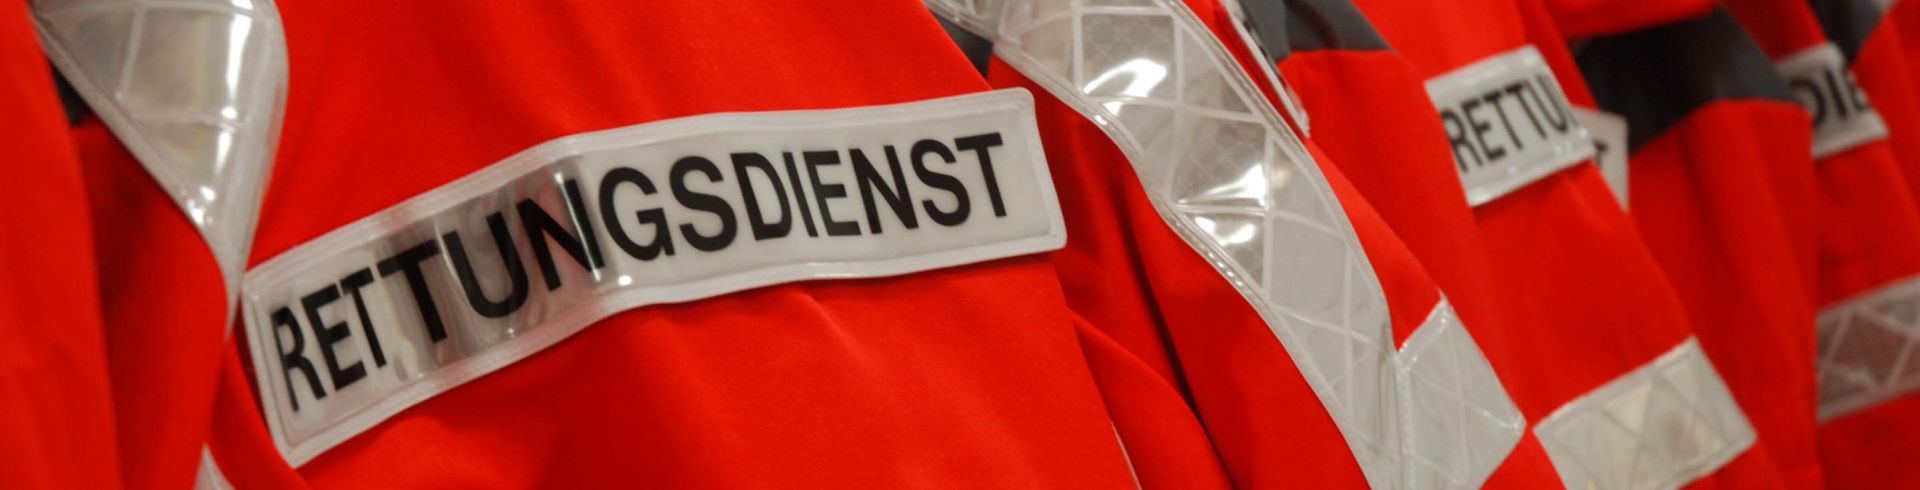 Rettungsdienst Teltow-Fläming: Jacken (rot) mit Aufschrift und reflektierenden Streifen